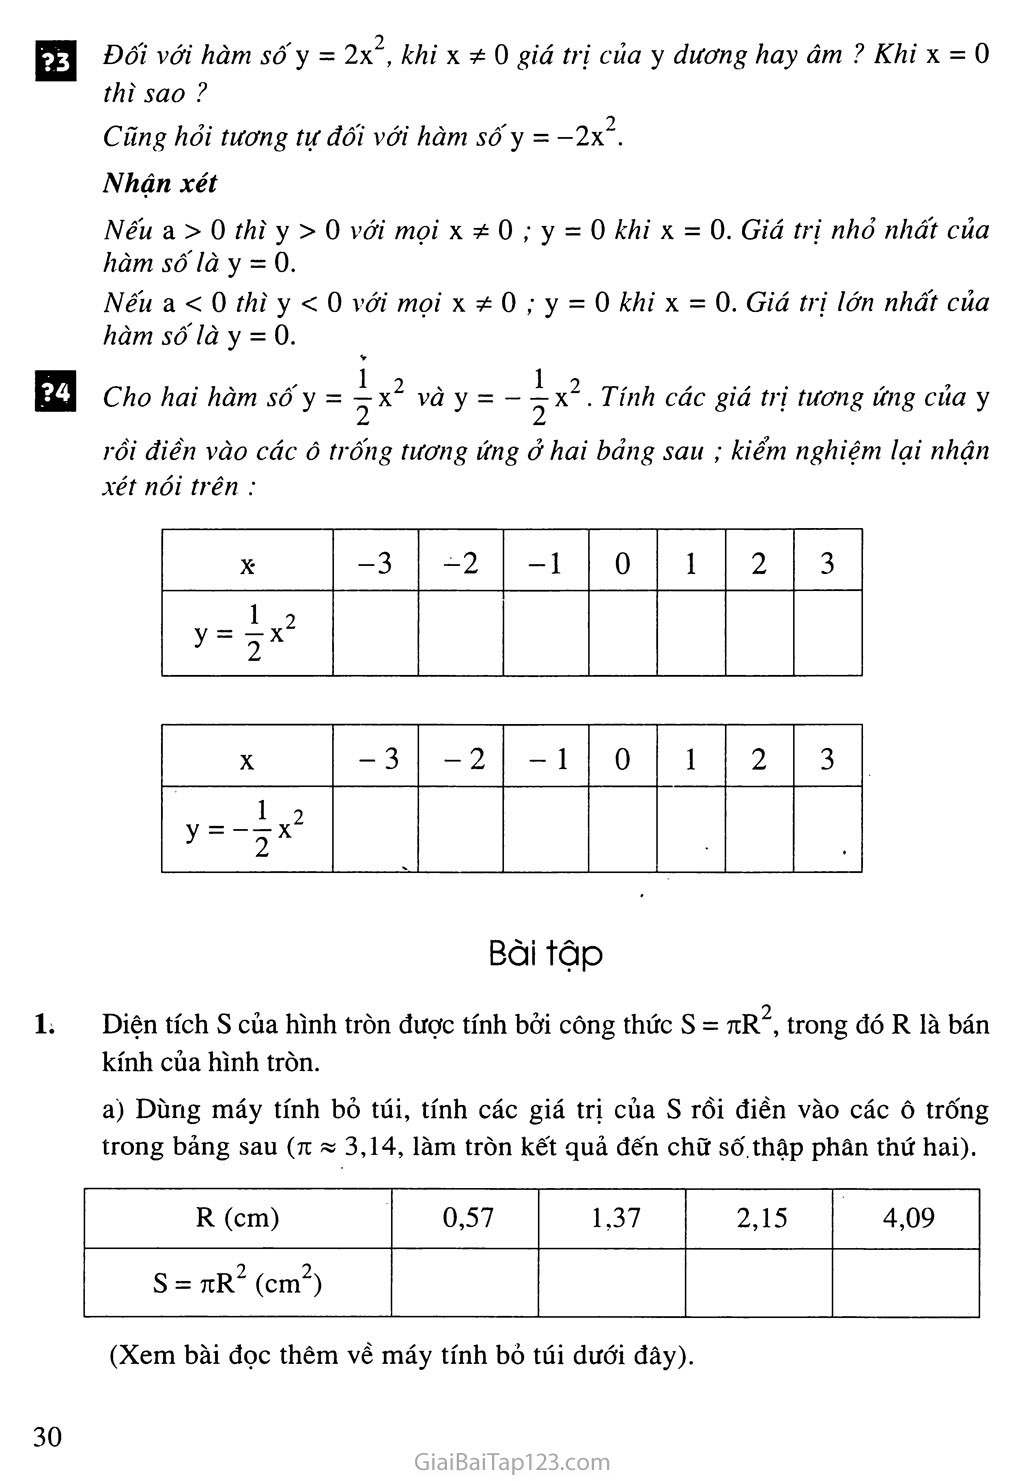 Bài 1. Hàm số y = ax2 (a khác 0) trang 3